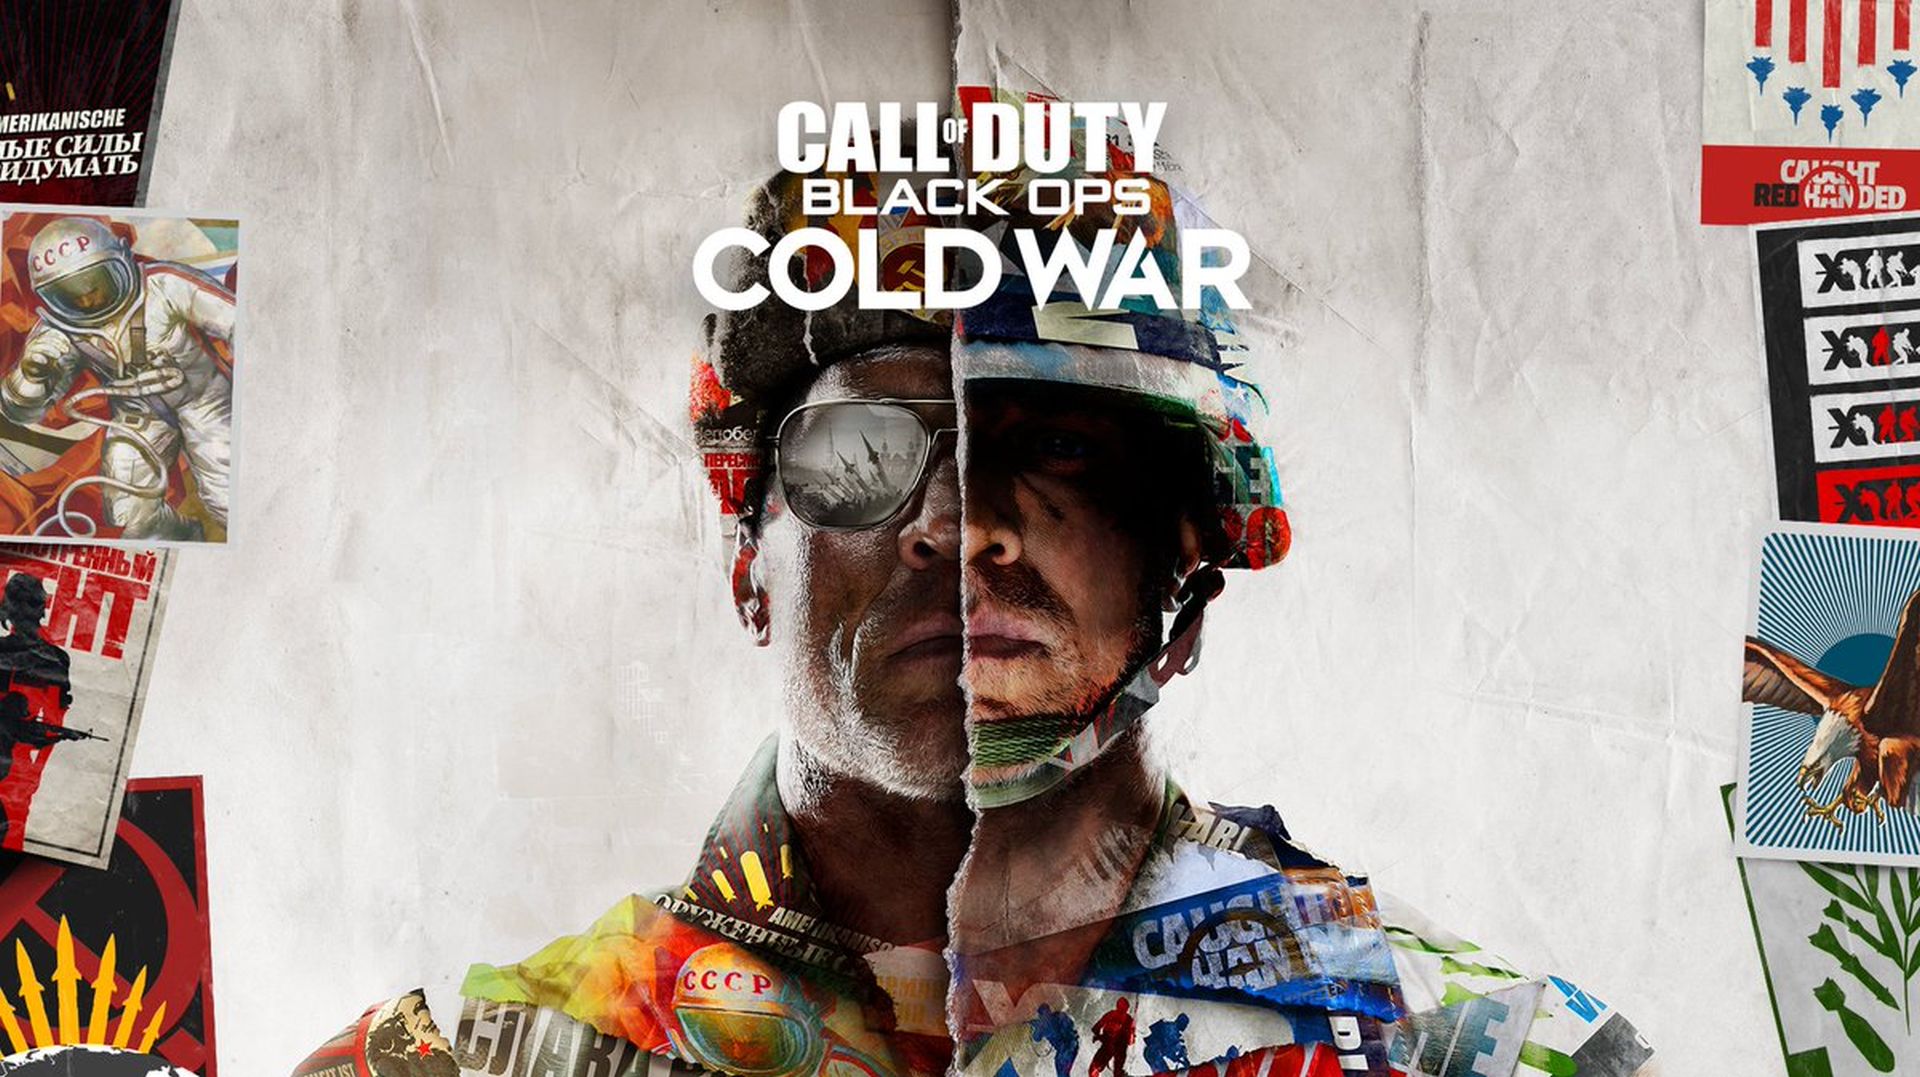 Call of Duty: Black Ops: la guerra freda es fusionarà i "respirarà més vida" a Warzone